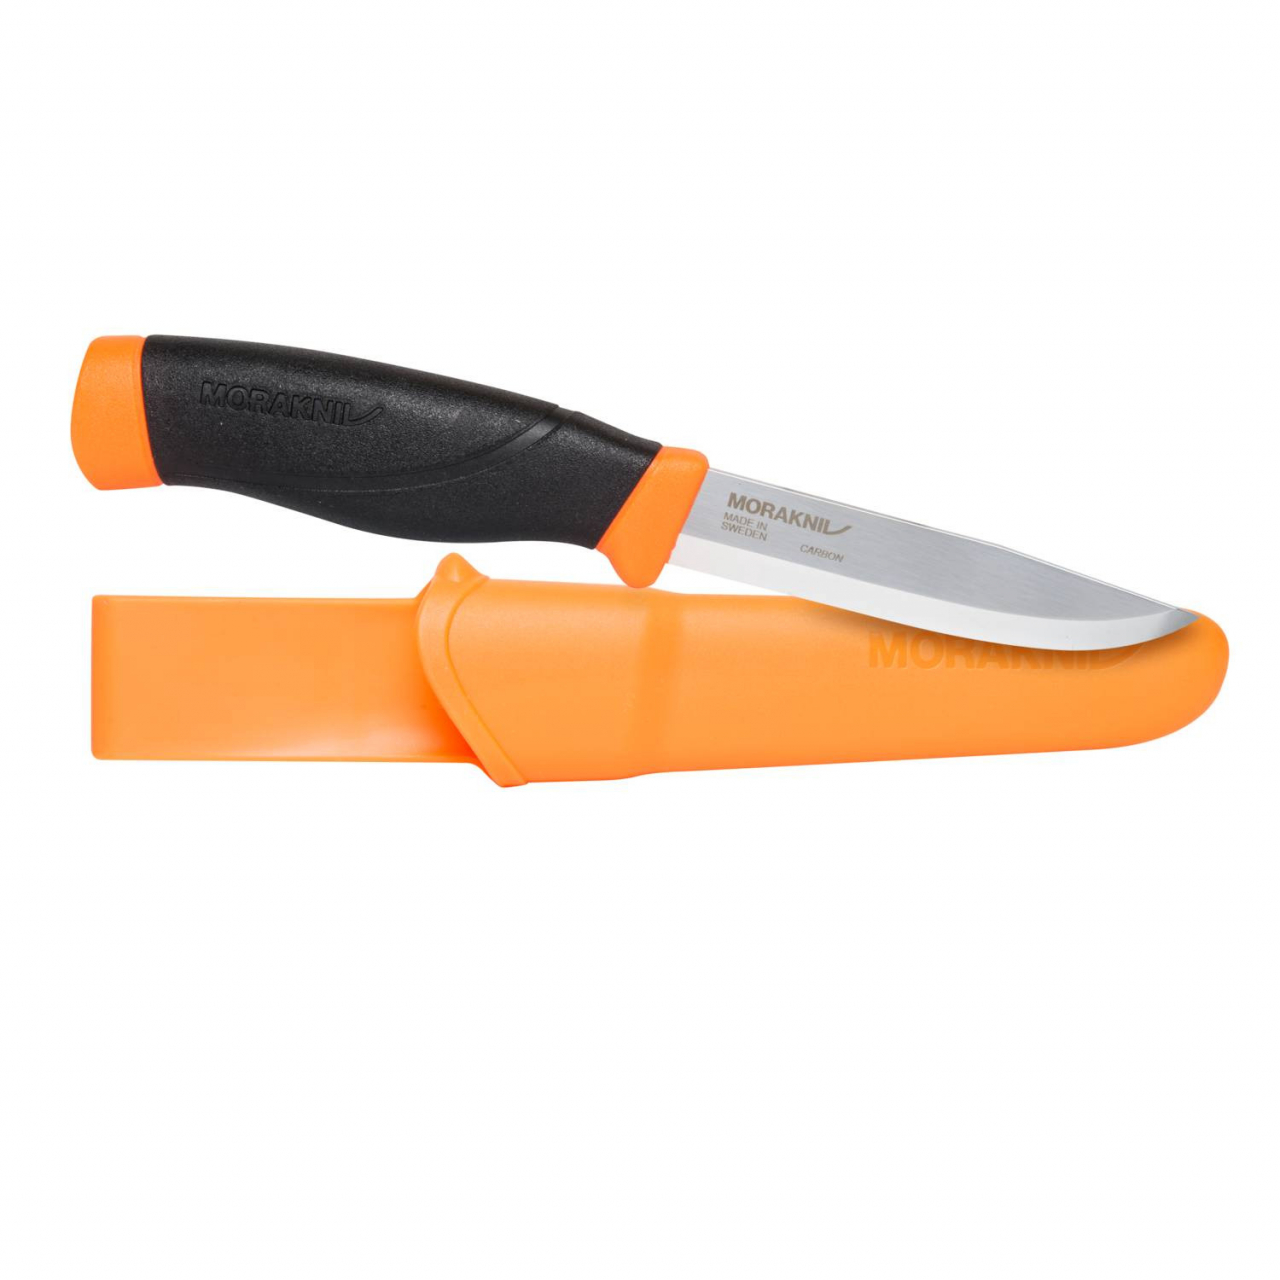 Pracovní nůž Morakniv Companion HeavyDuty - černý-oranžový (18+)